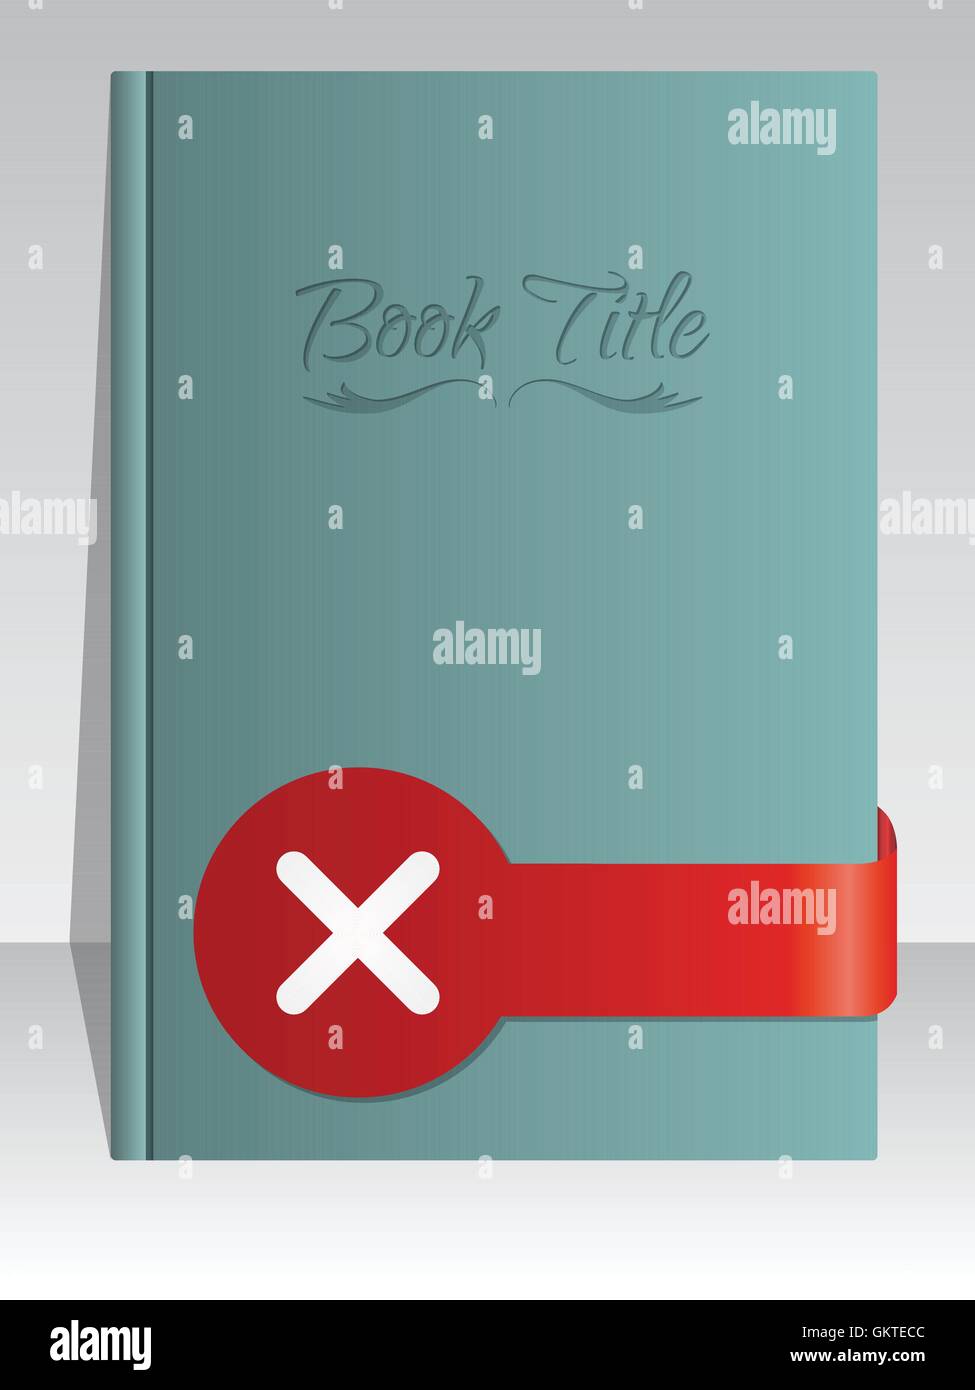 Couverture de livre design simpliste avec croix Illustration de Vecteur